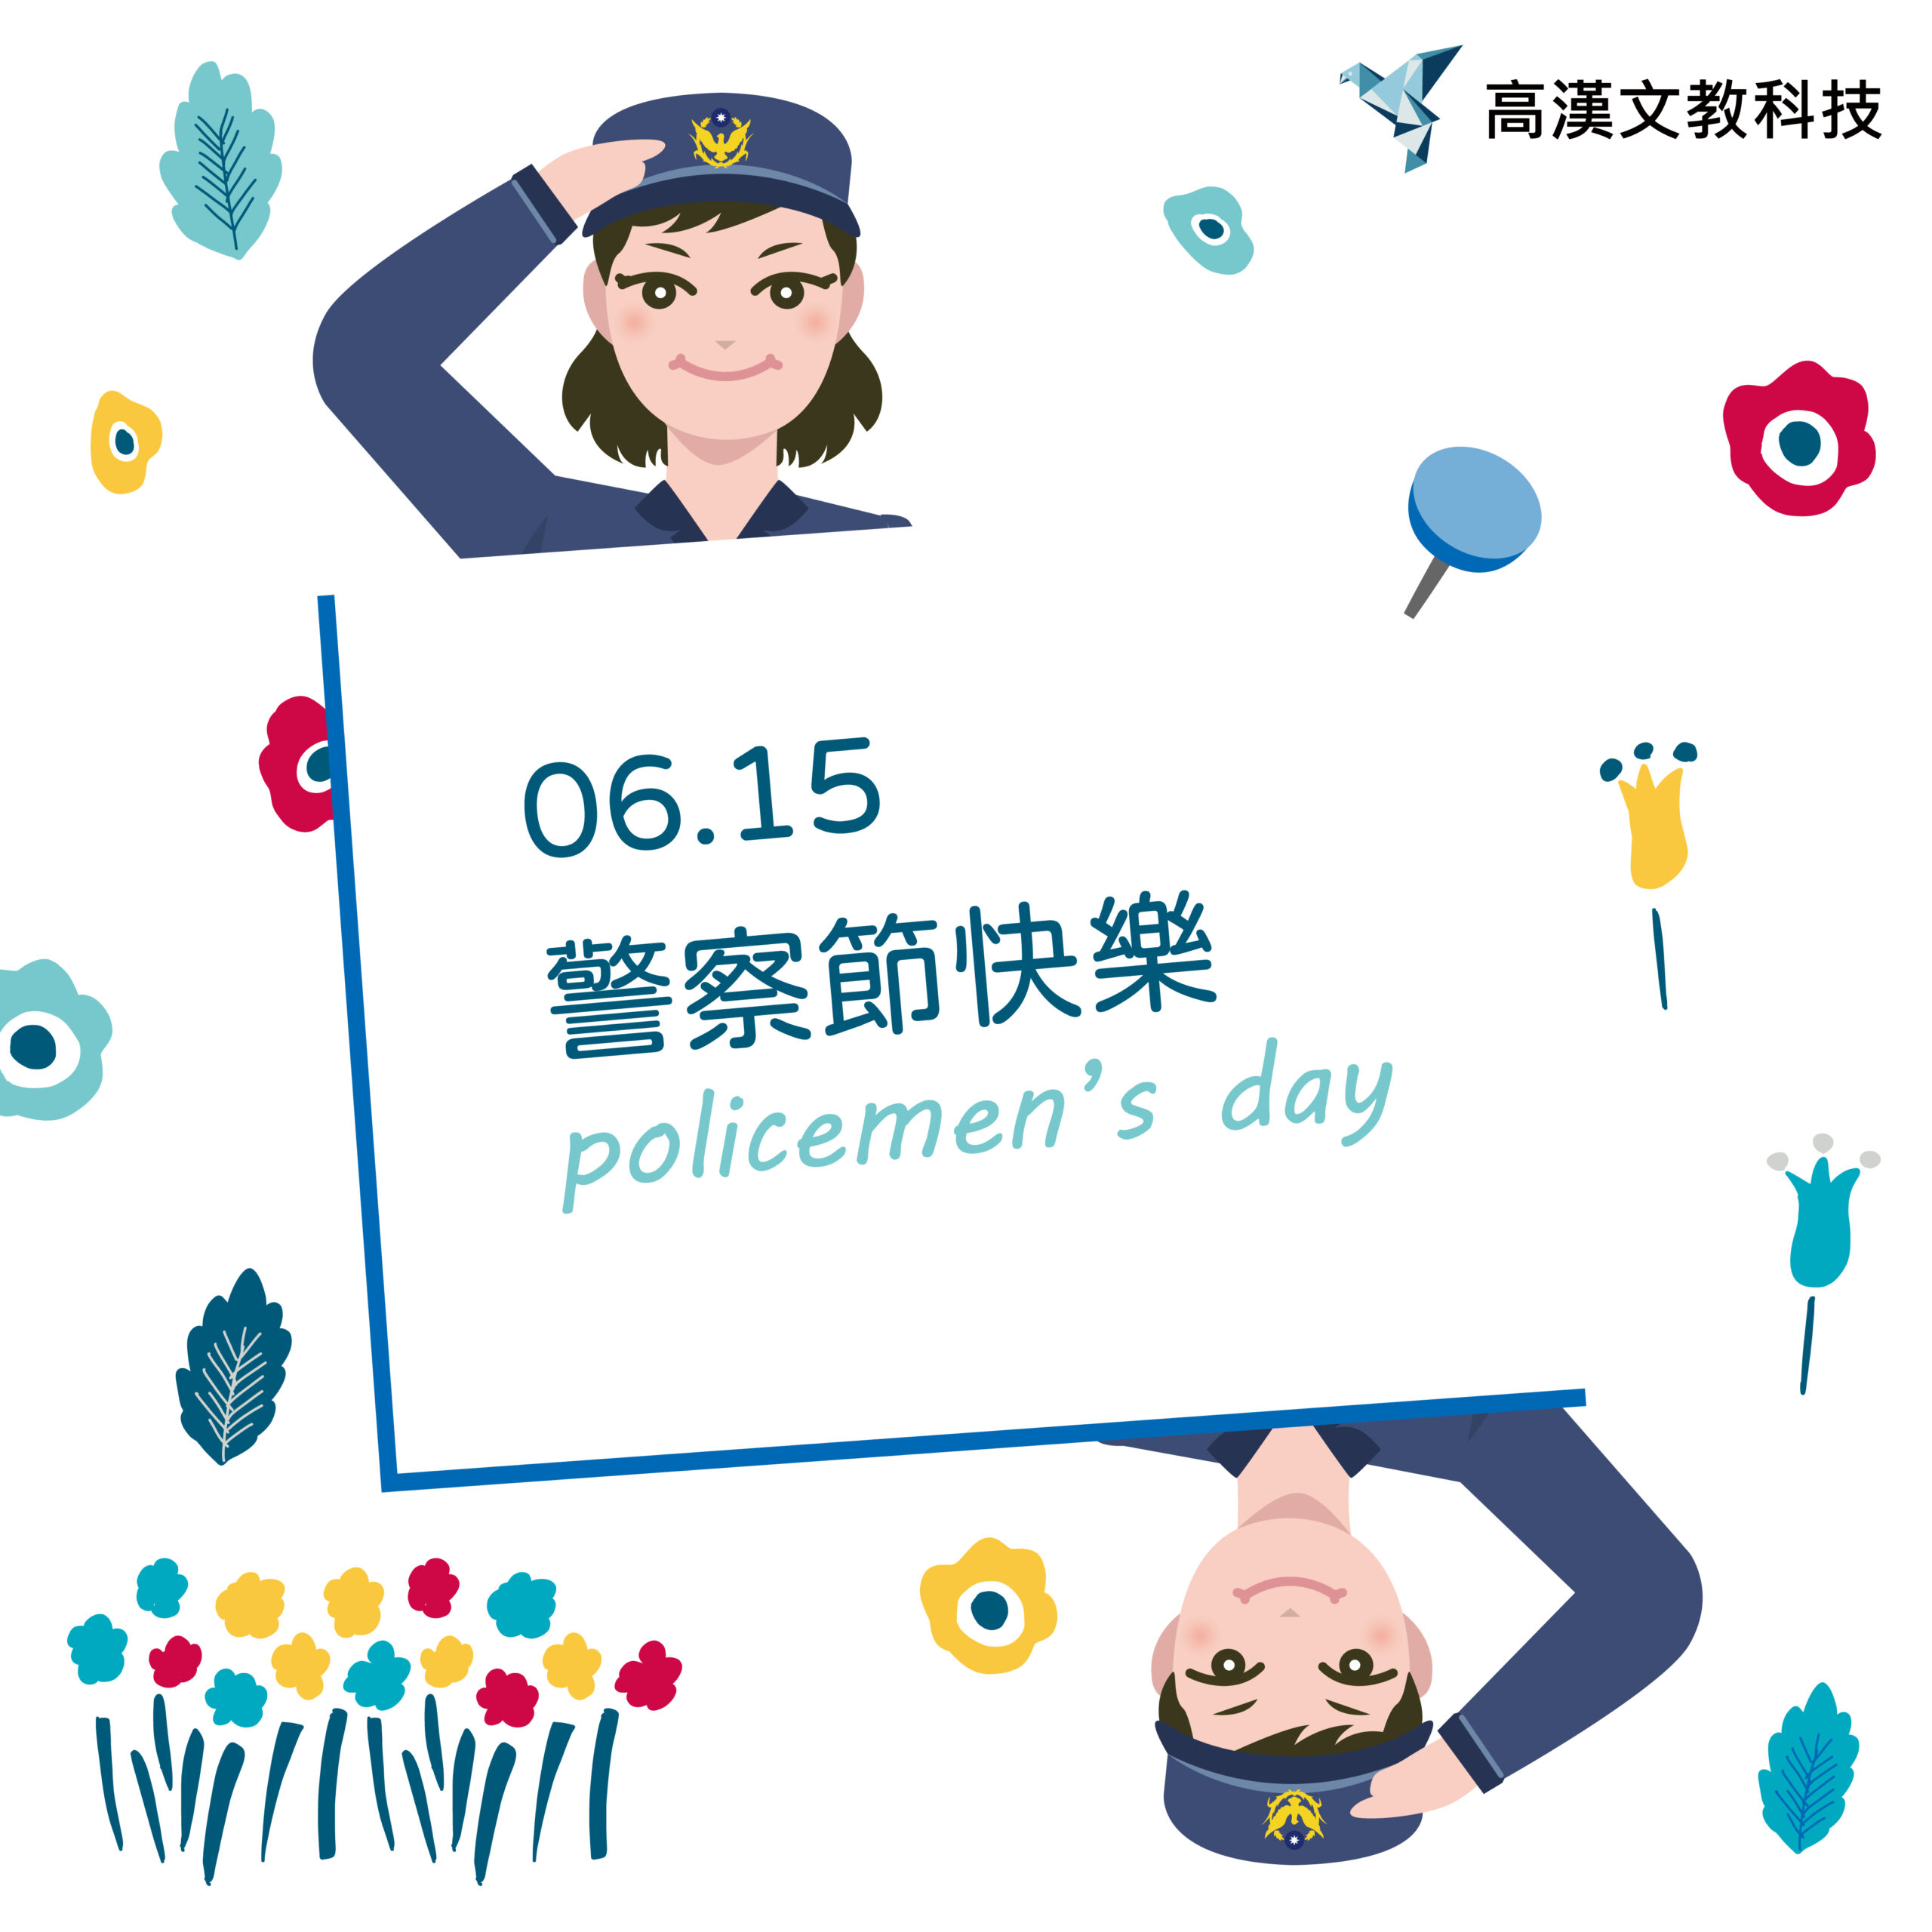 祝大家6/15警察節快樂！！